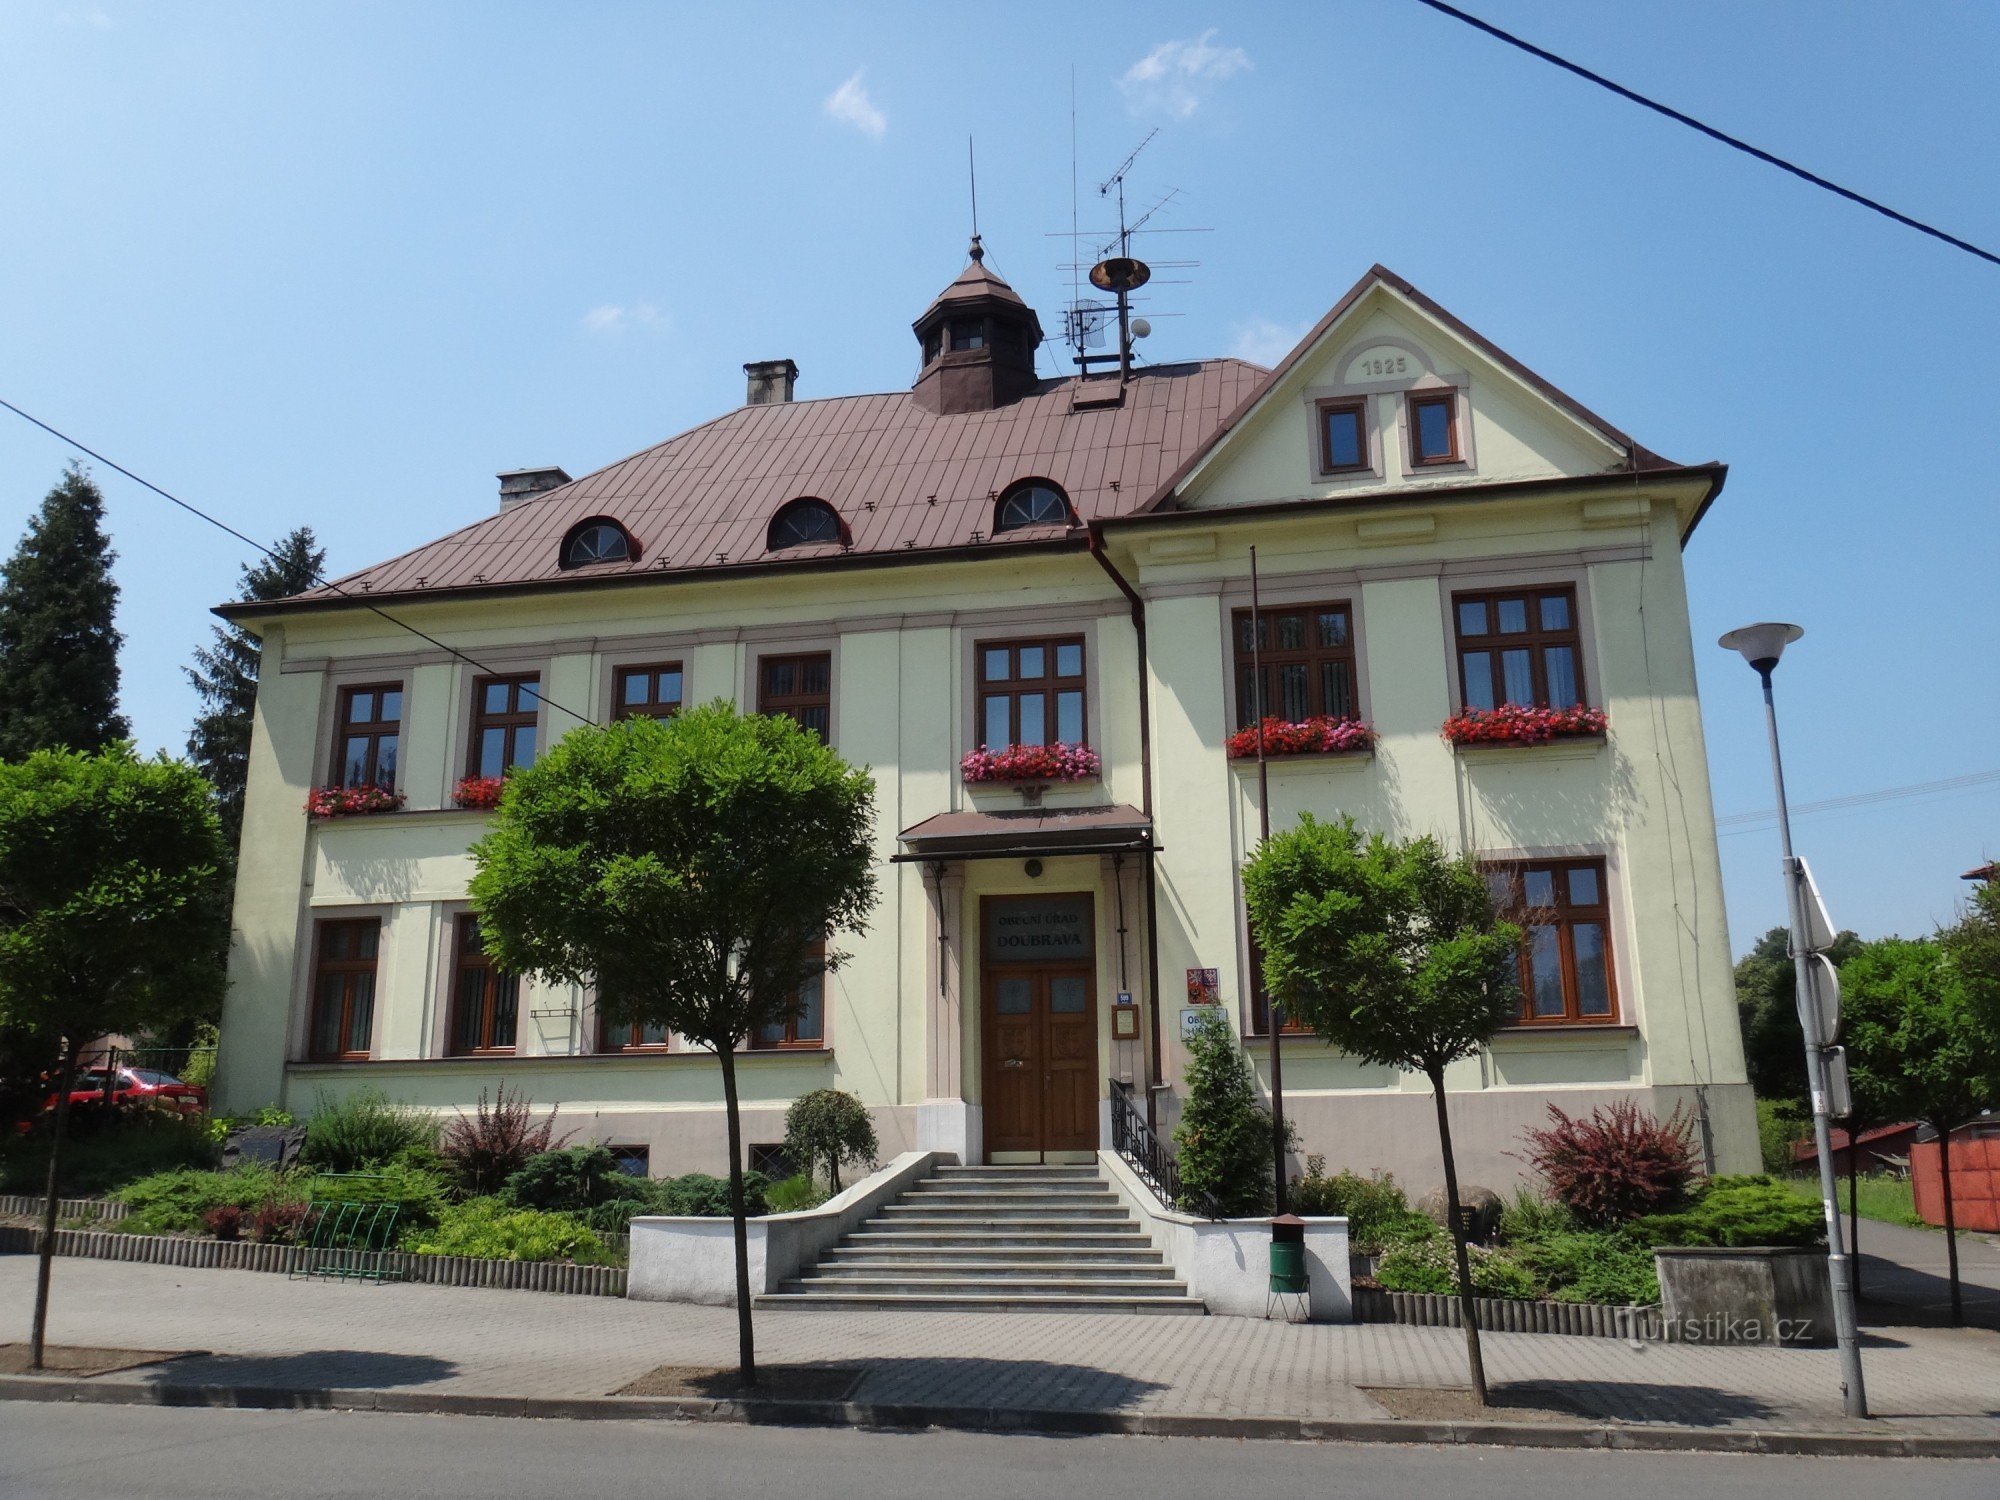 Nacionalni dom Doubrava